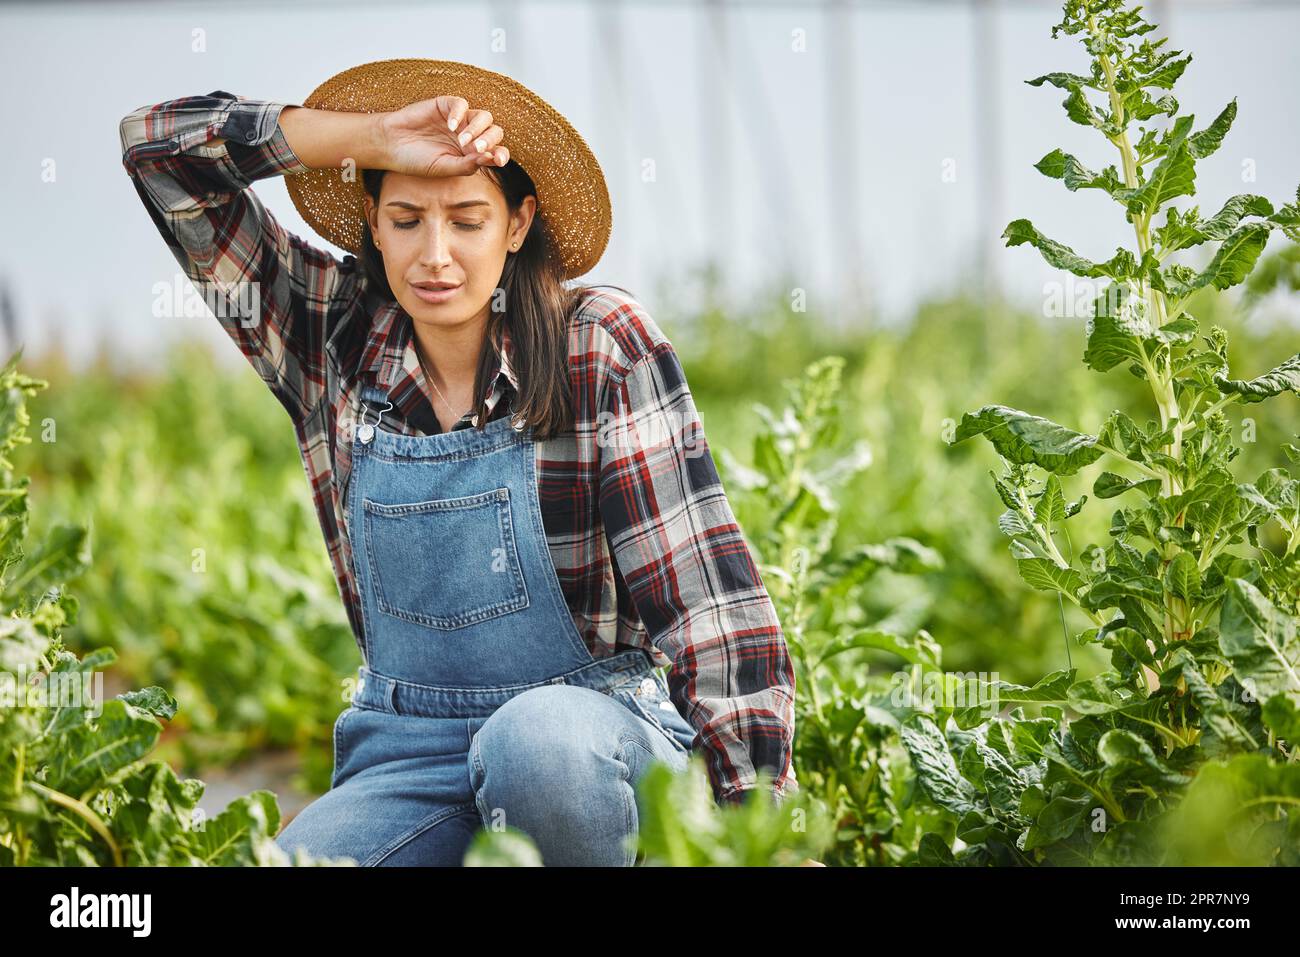 La agricultura no es una tarea fácil. Foto recortada de una atractiva mujer joven trabajando en su granja. Foto de stock